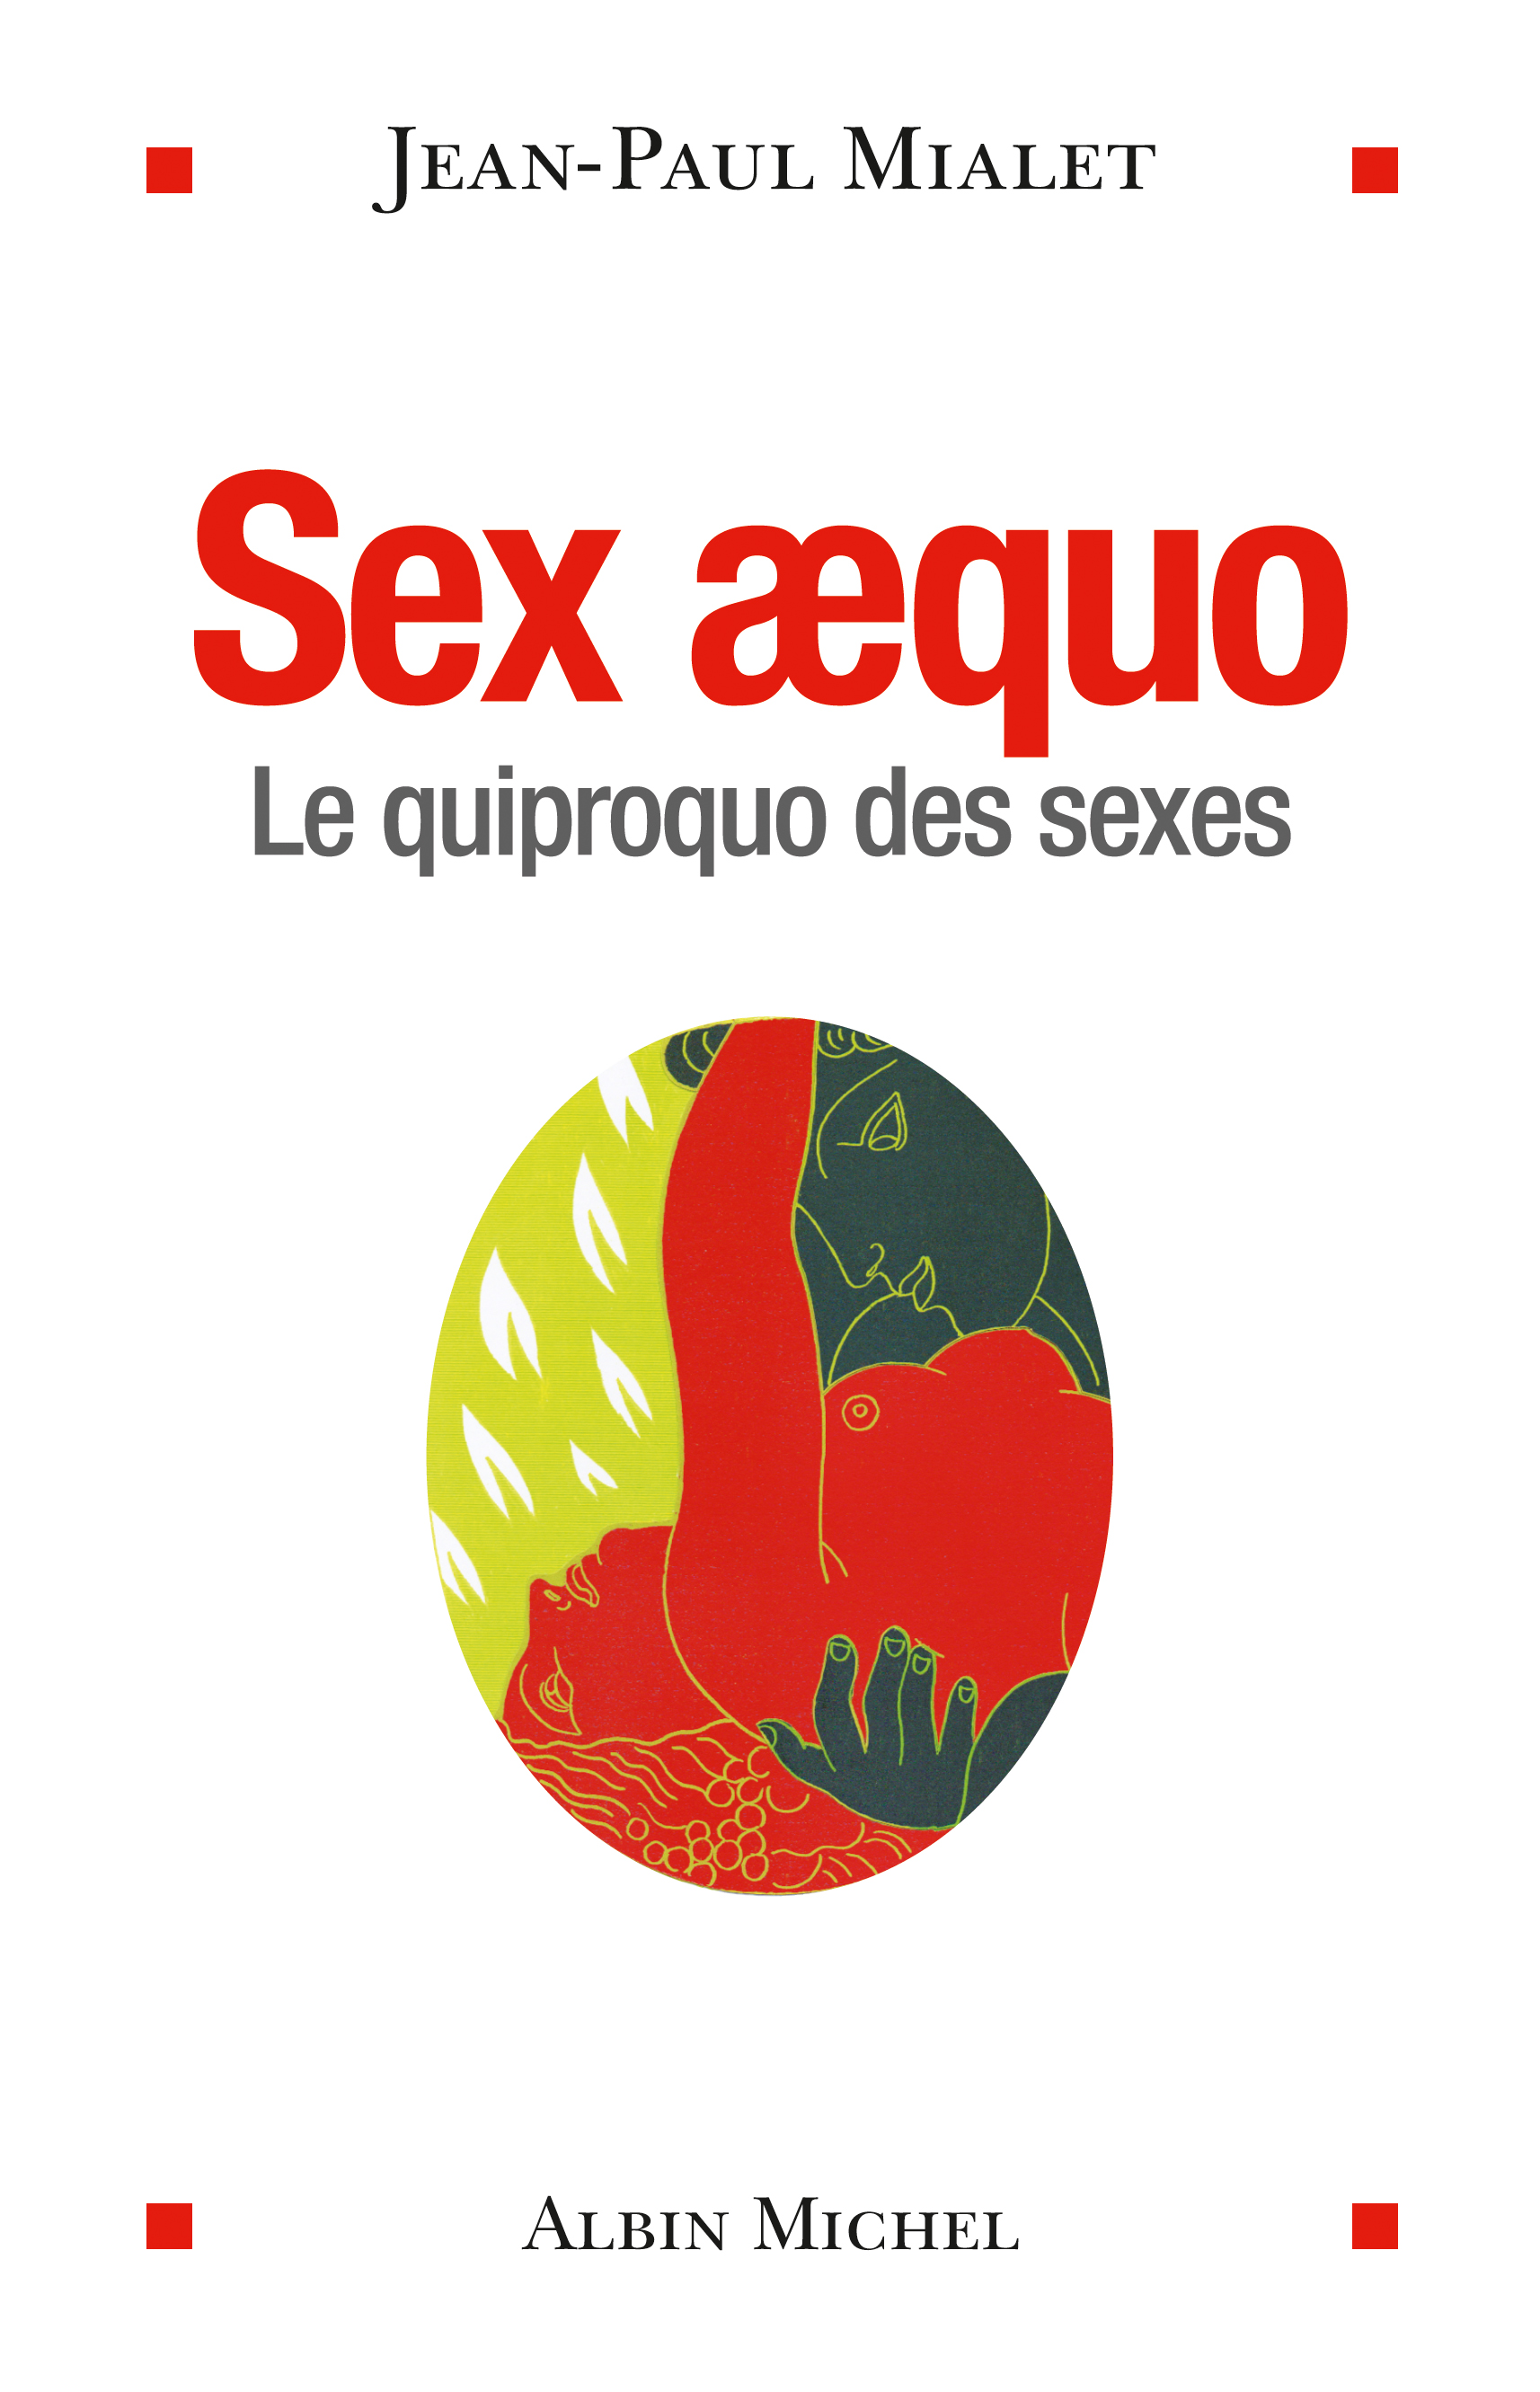 Couverture du livre Sex aequo